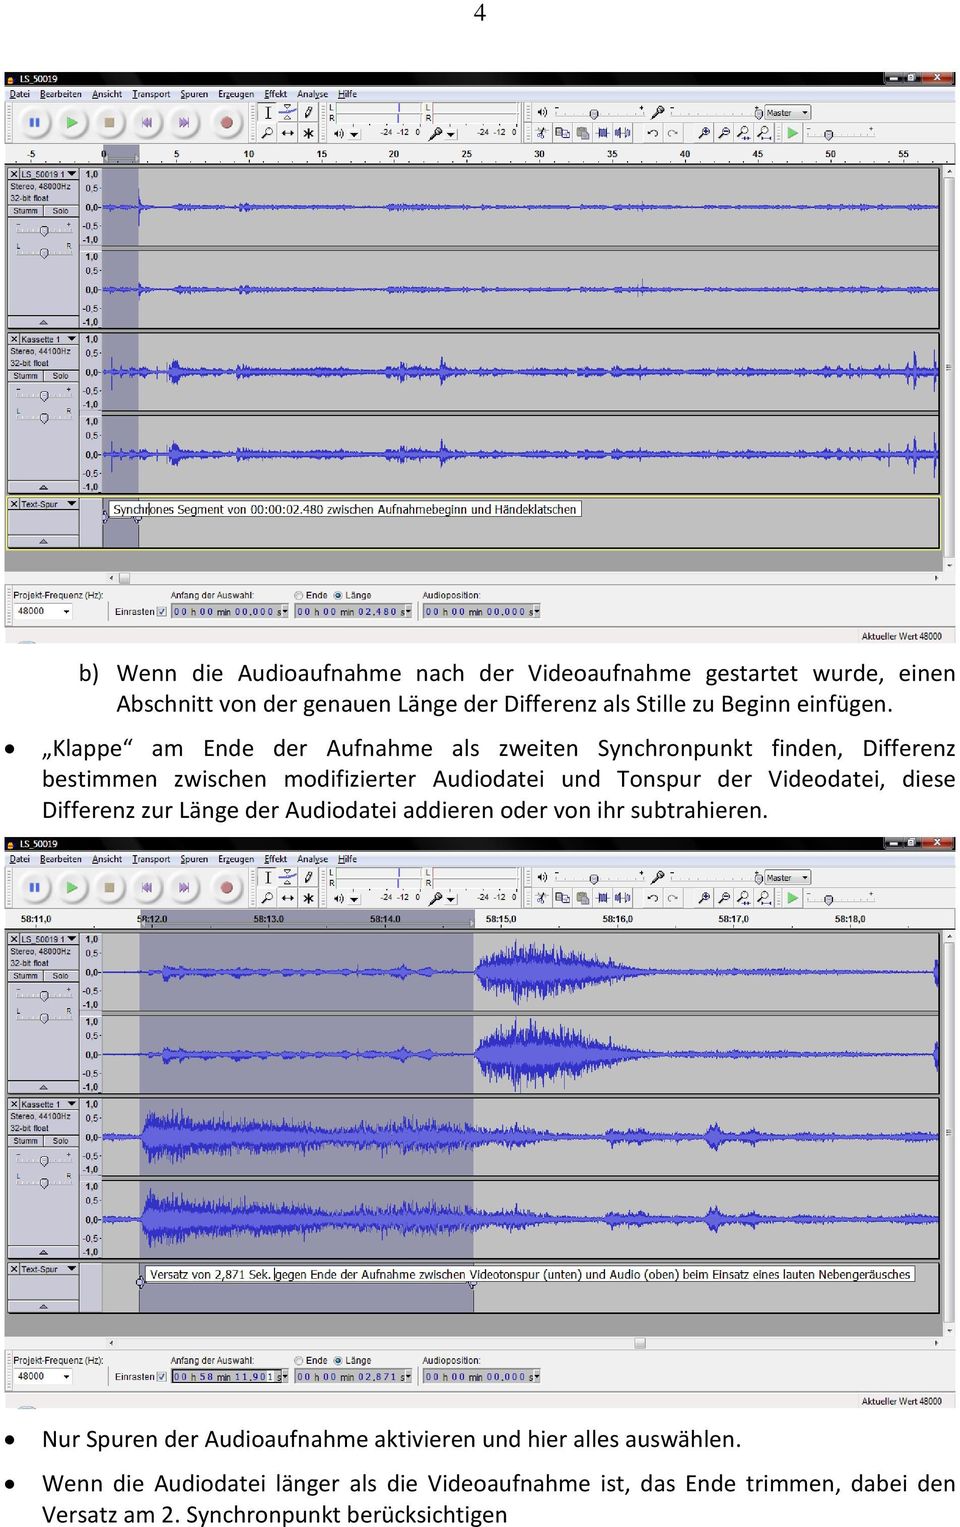 Klappe am Ende der Aufnahme als zweiten Synchronpunkt finden, Differenz bestimmen zwischen modifizierter Audiodatei und Tonspur der